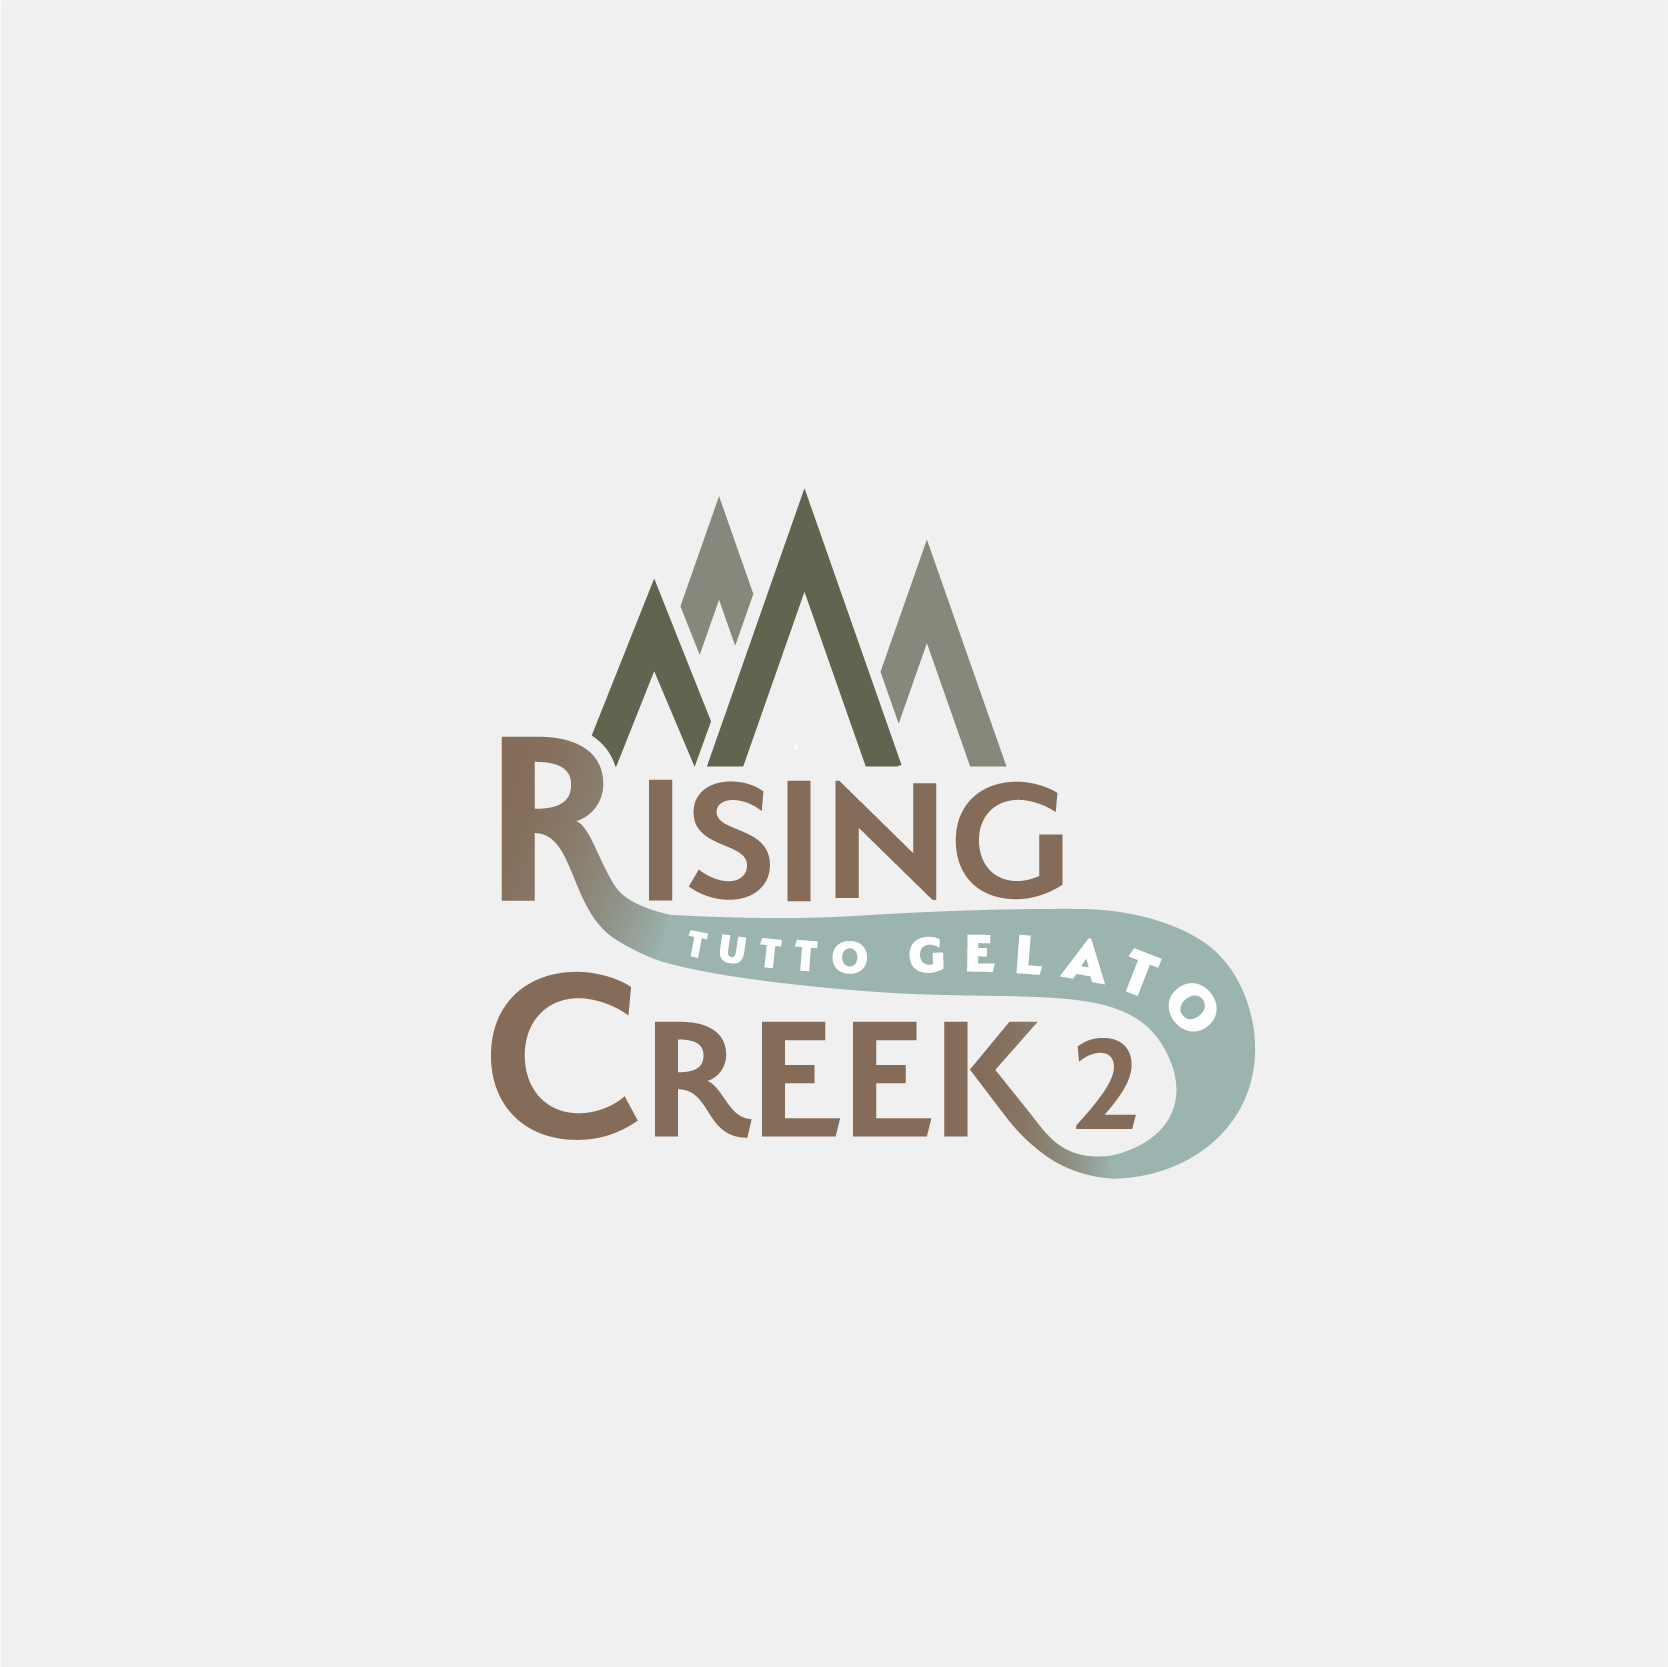 Rising Creek 2 Outtake 1